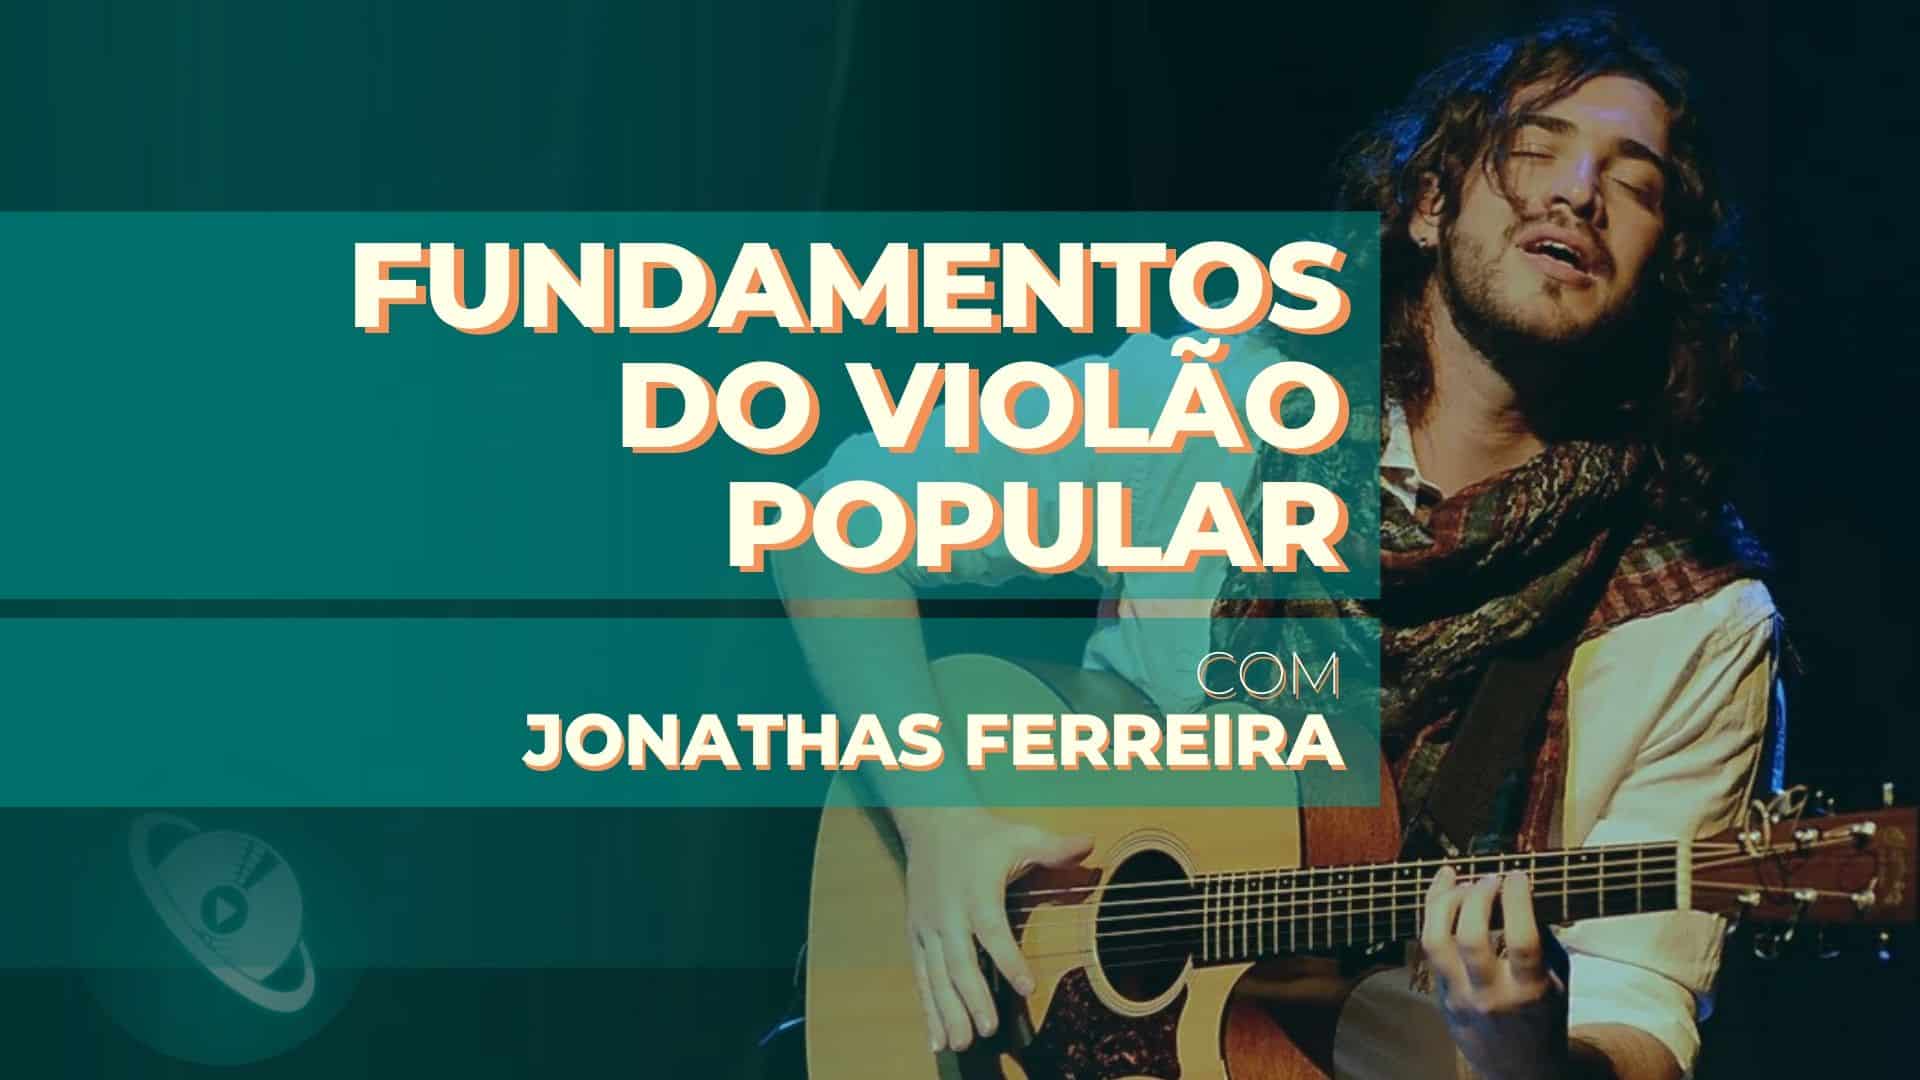 Fundamentos do Violão Popular, com Jonathas Ferreira